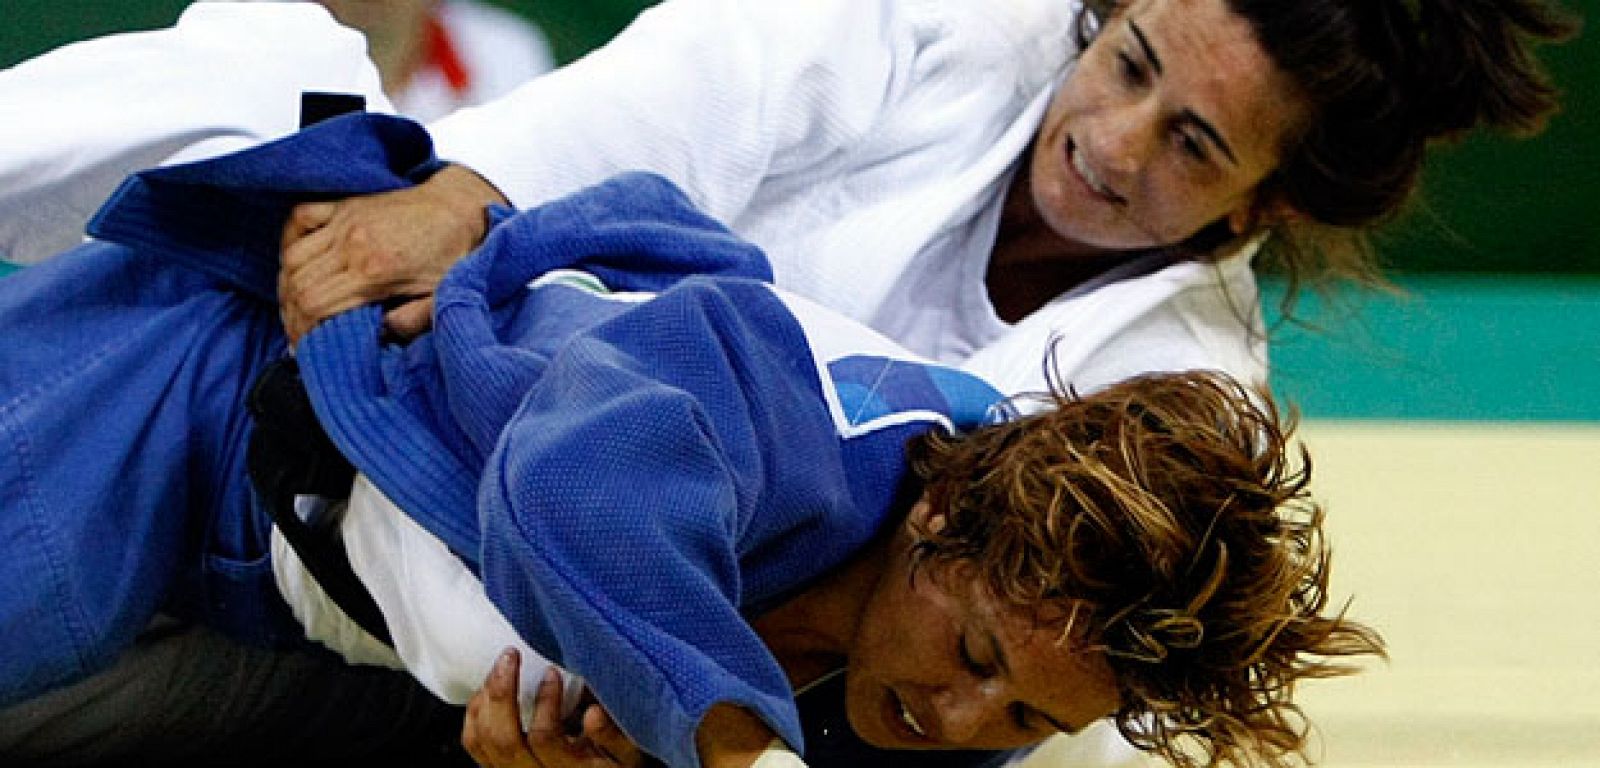 Isabel Fernández ha comenzado con victoria al imponerse a la estadunidense Valerie Gotay en su primer combate en la categoría de menos de 57 kilos.